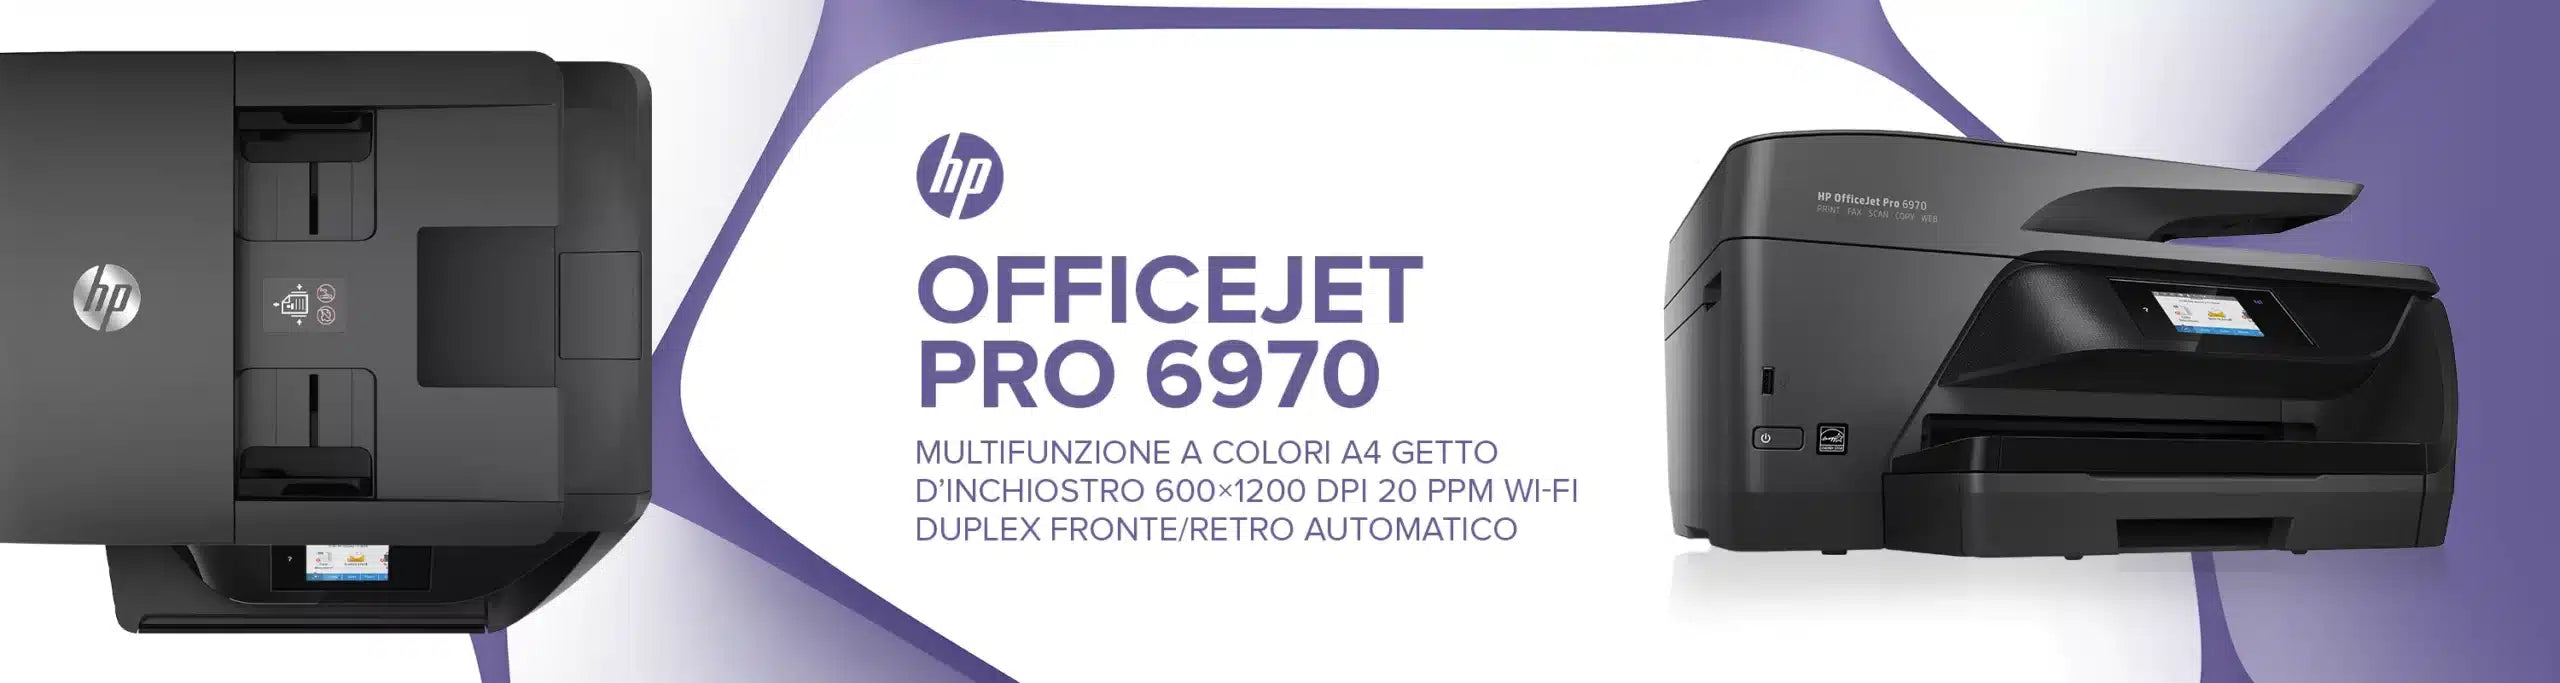 OfficeJet Pro 6970